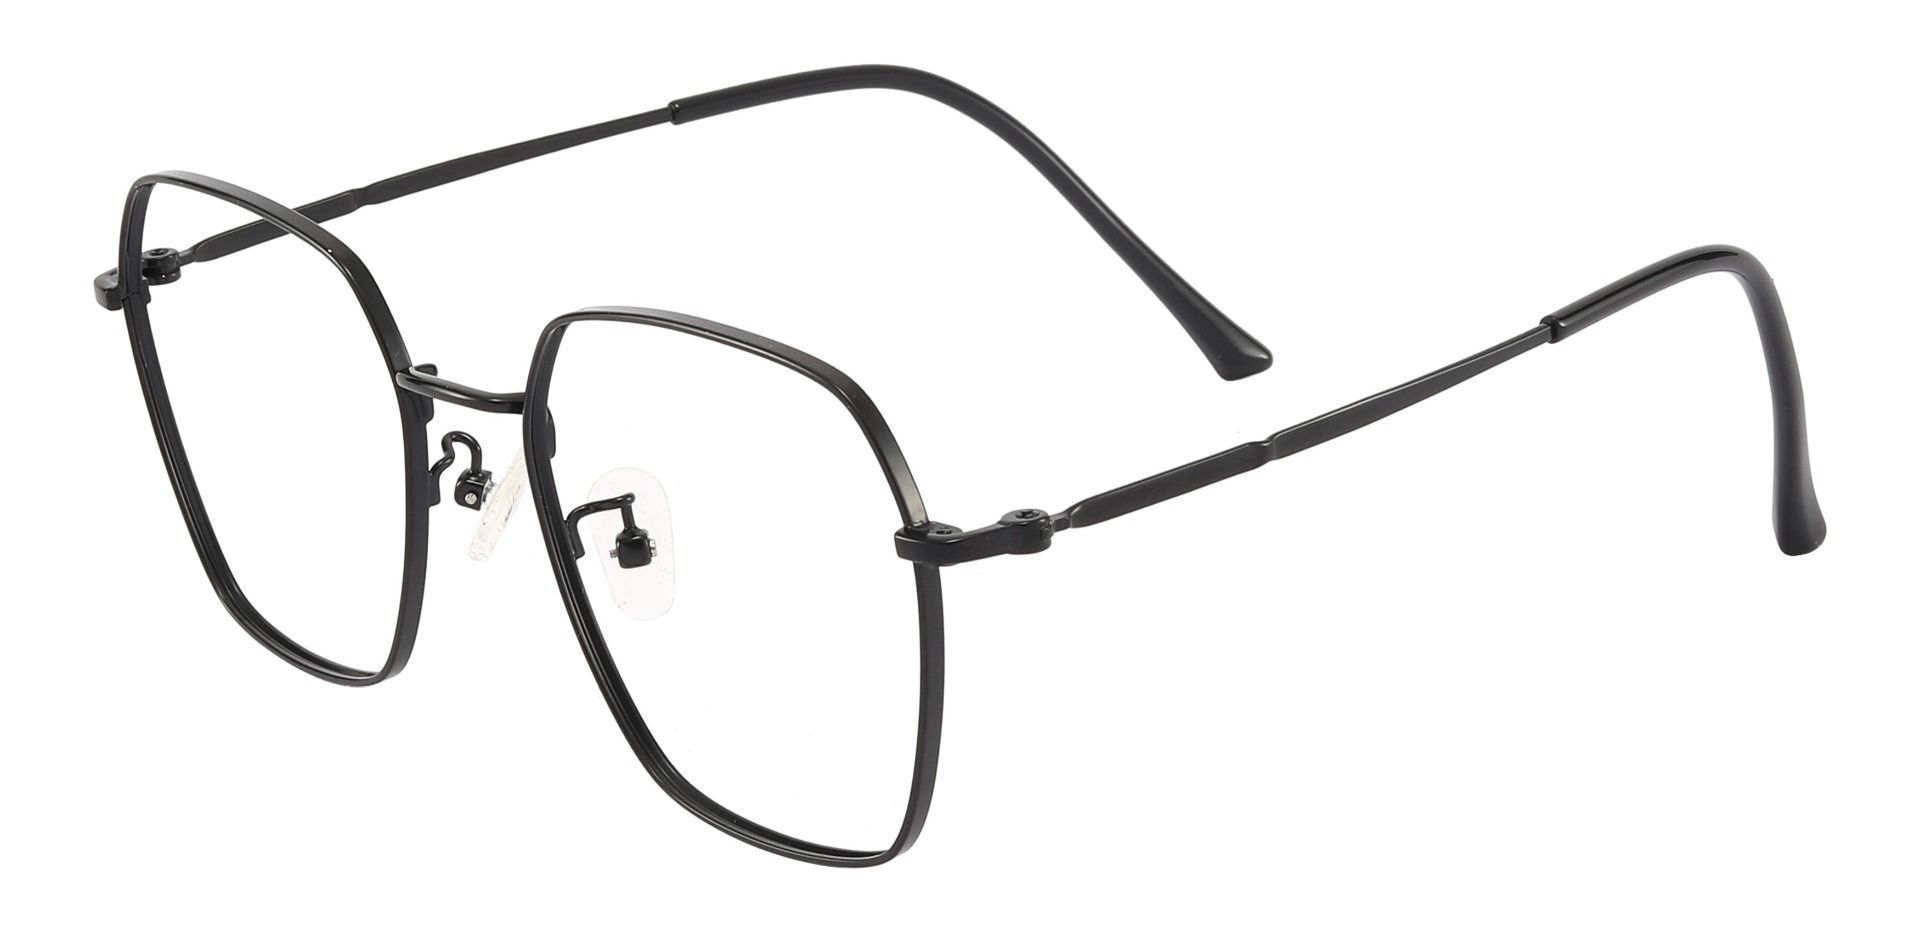 Calvin Geometric Eyeglasses Frame - Black